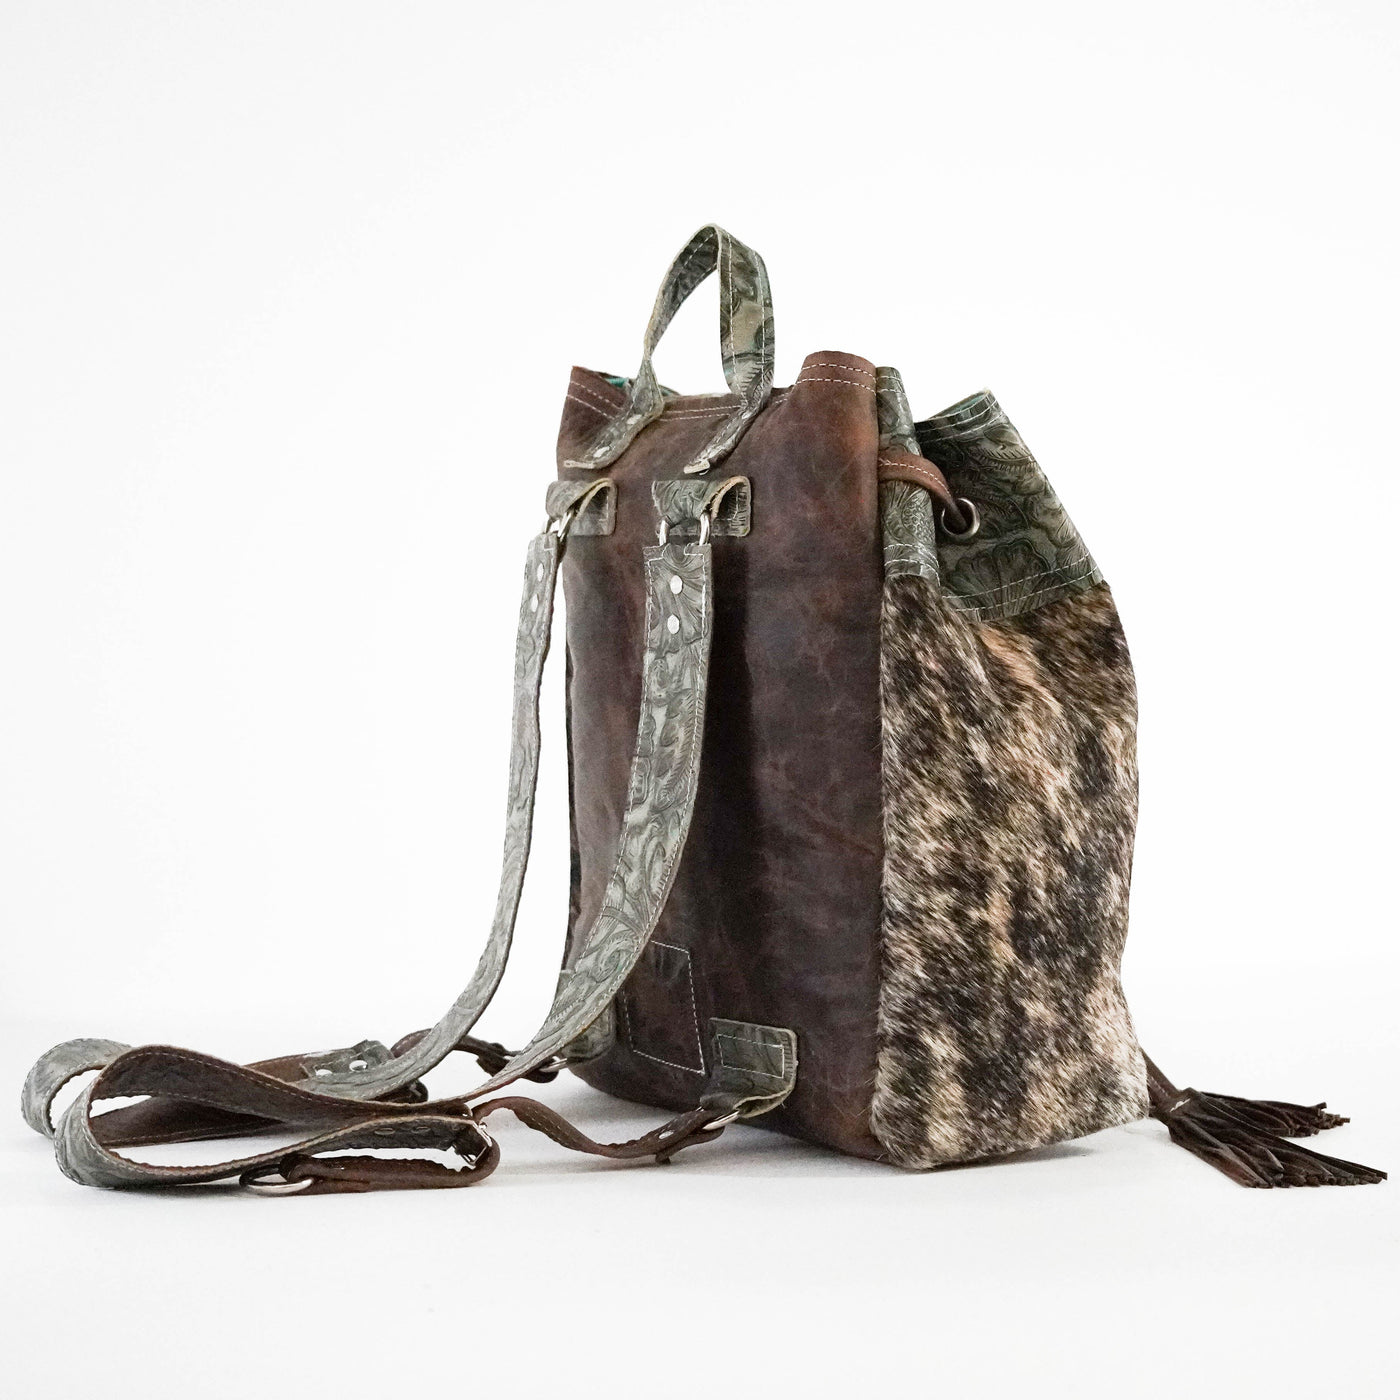 Kelsea Backpack - Brindle w/ Turquoise Autumn-Kelsea Backpack-Western-Cowhide-Bags-Handmade-Products-Gifts-Dancing Cactus Designs